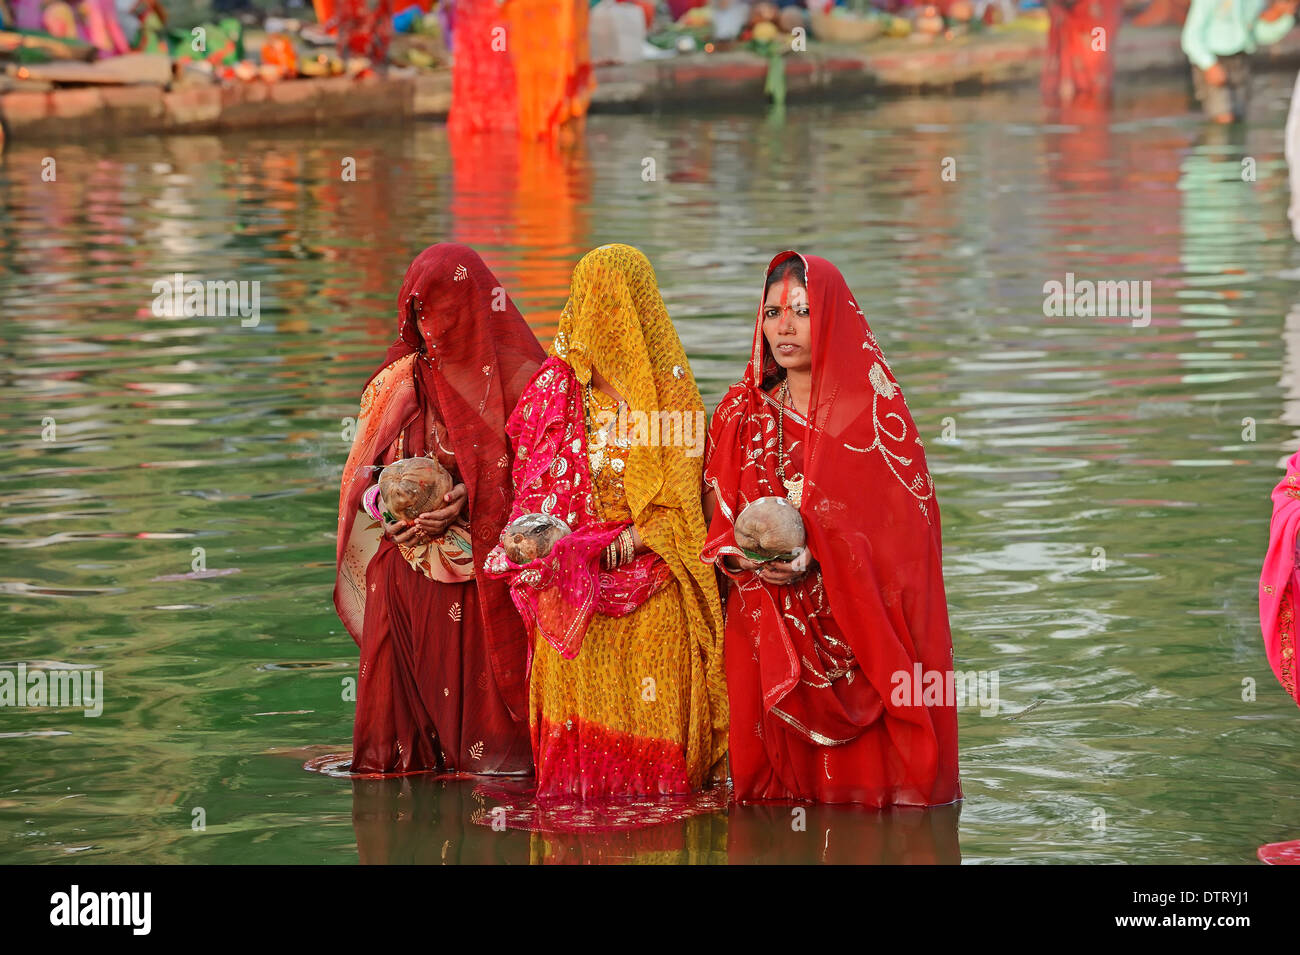 Les femmes à l'hindoue Chhath festival, New Delhi, Inde / New Dehli, fête hindoue, les femmes indiennes Banque D'Images